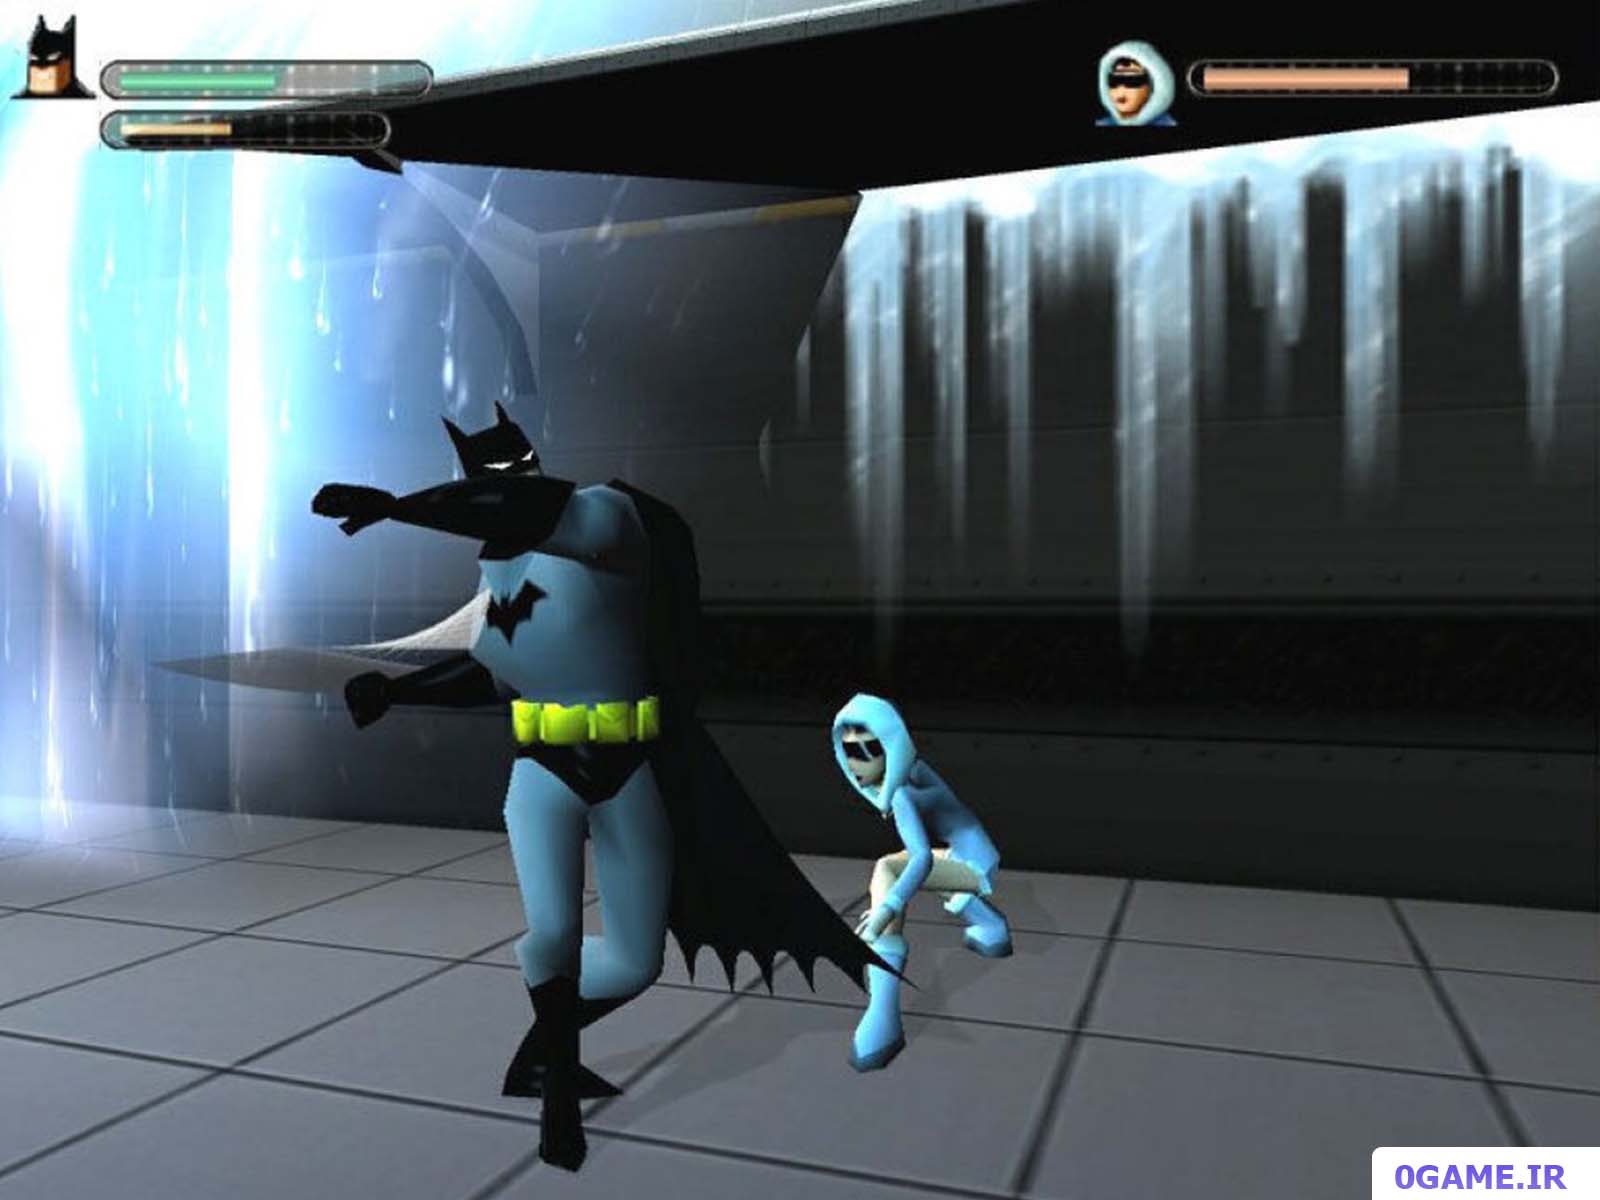 دانلود : انتقام (Batman: Vengeance) نسخه کامل برای کامپیوتر